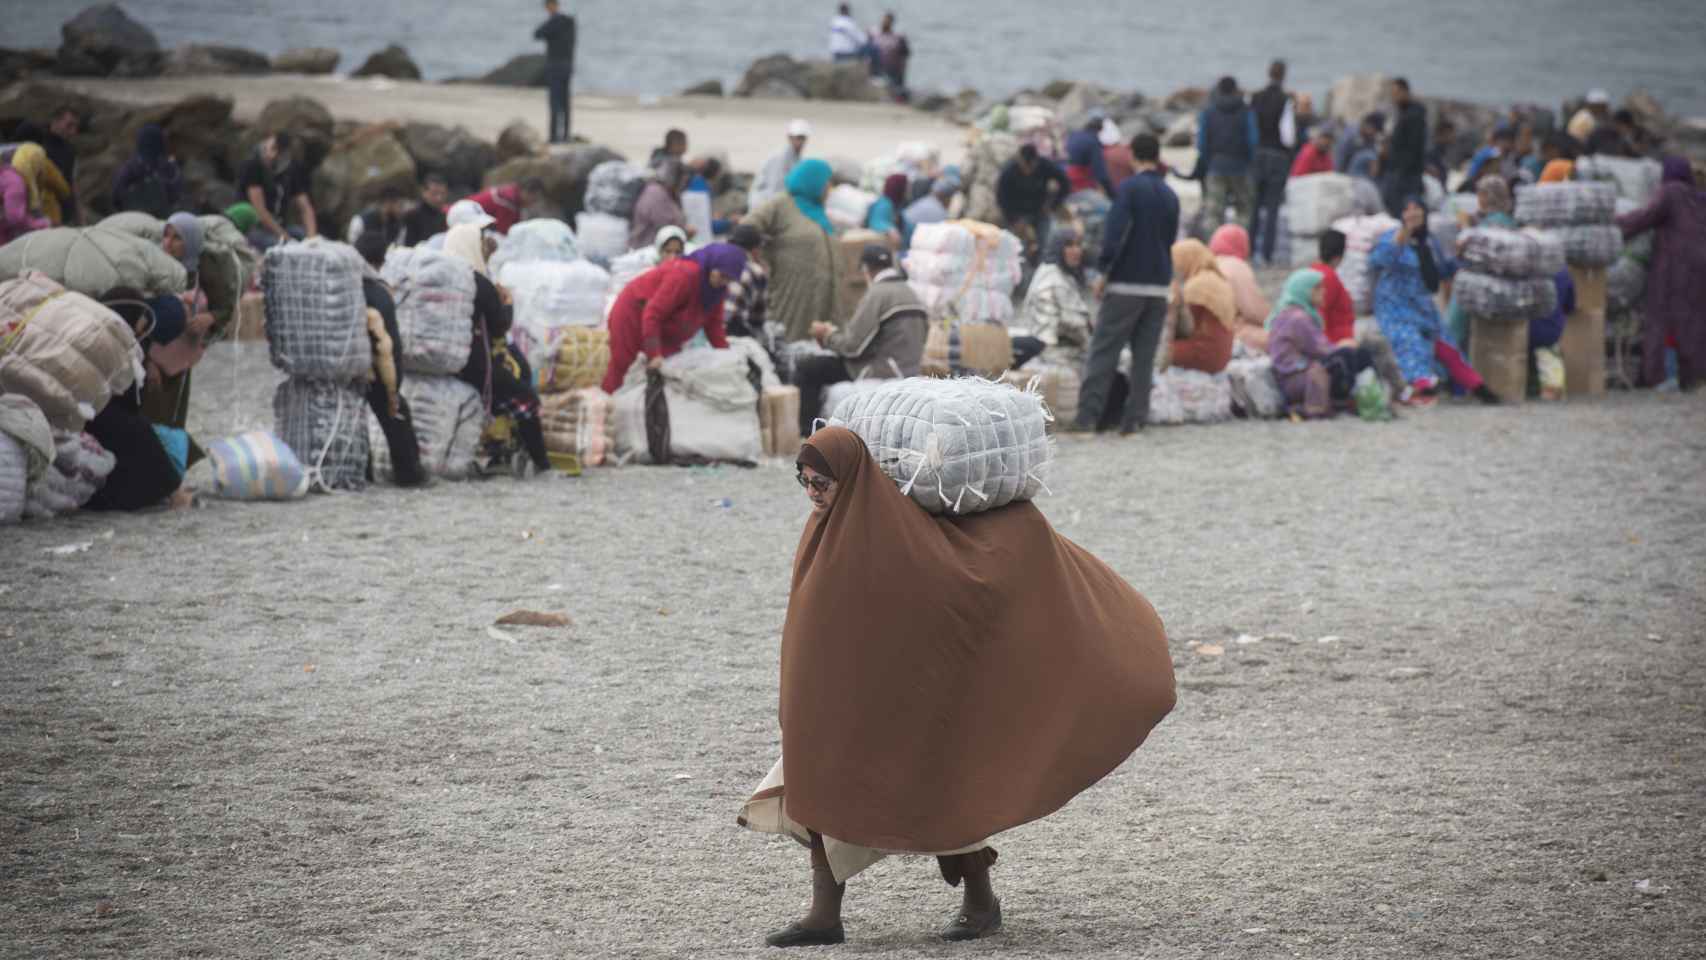 Porteadoras hacen cola en la playa del Tarajal, Ceuta para entrar en Marruecos - MARCOS MORENO38